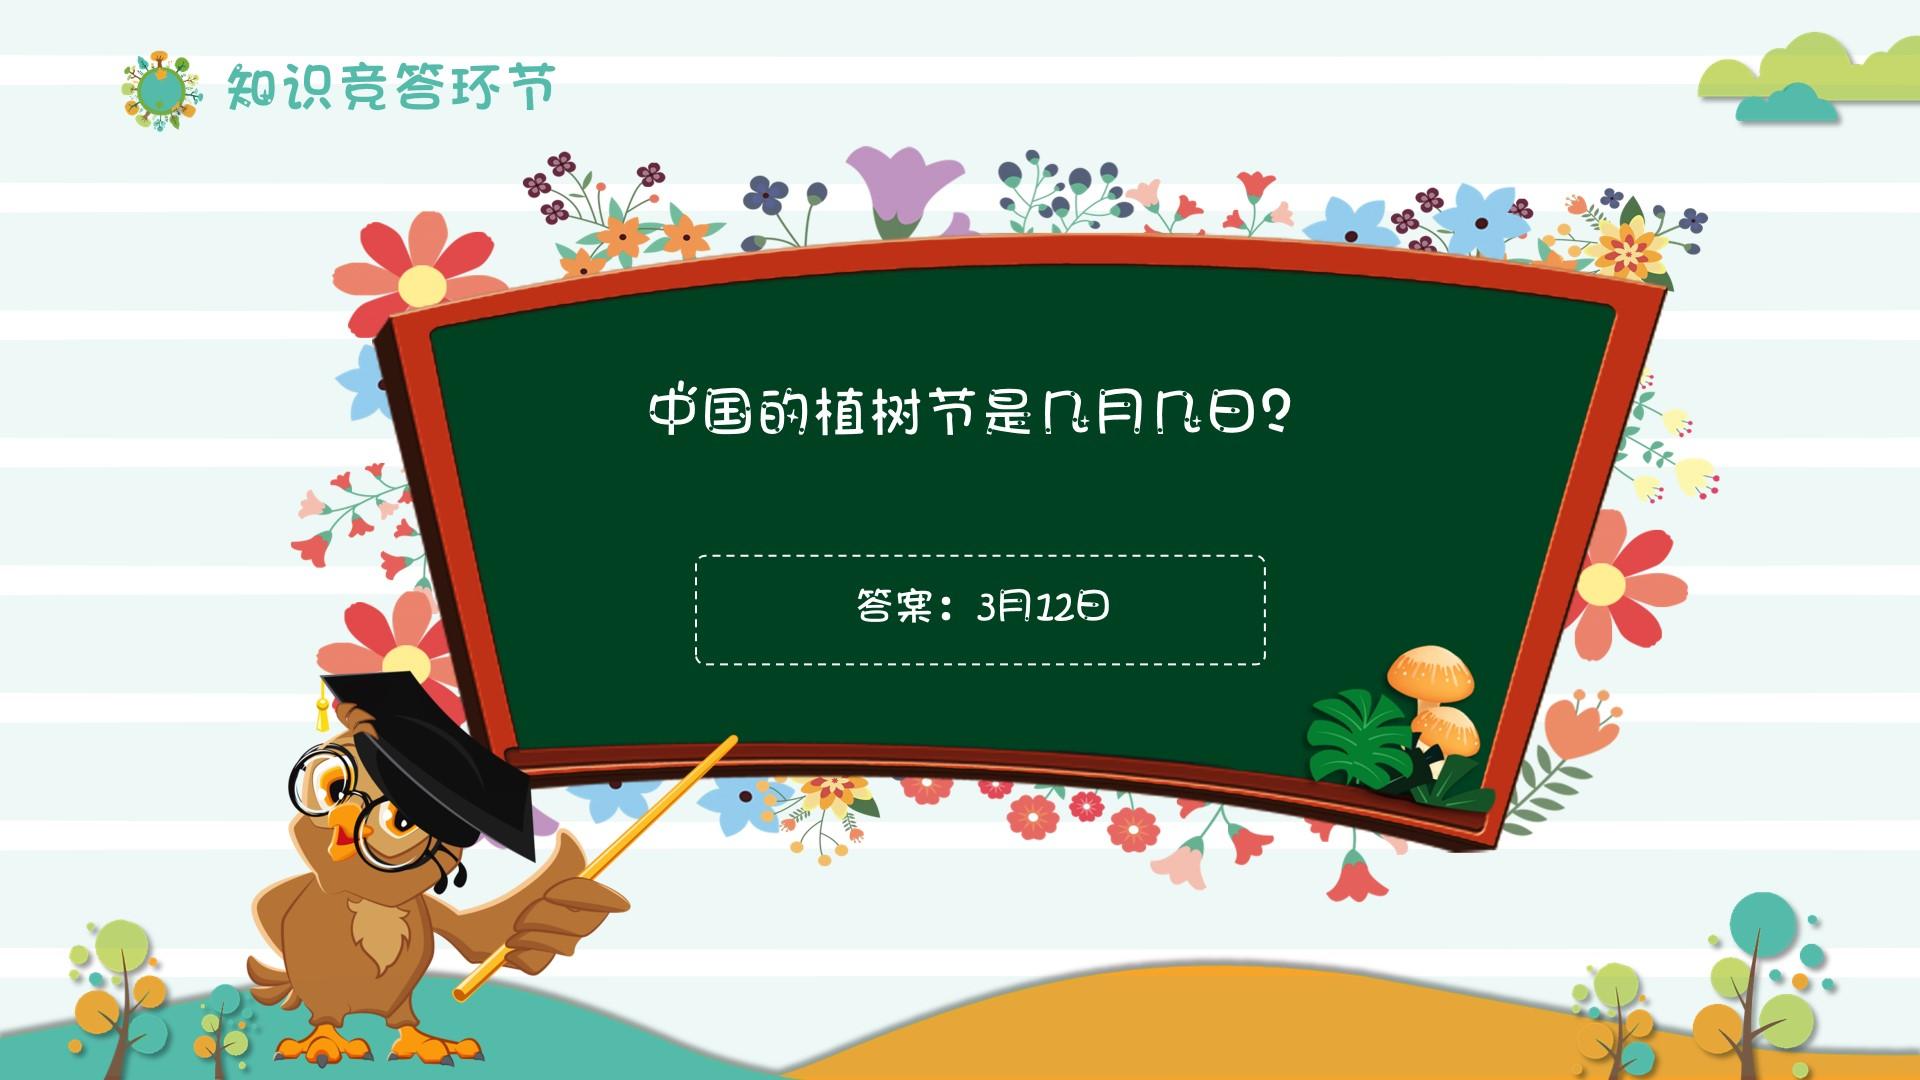 教育教学橙色白色卡通环节中国植树节知识竞答云素材PPT模板1672554459264